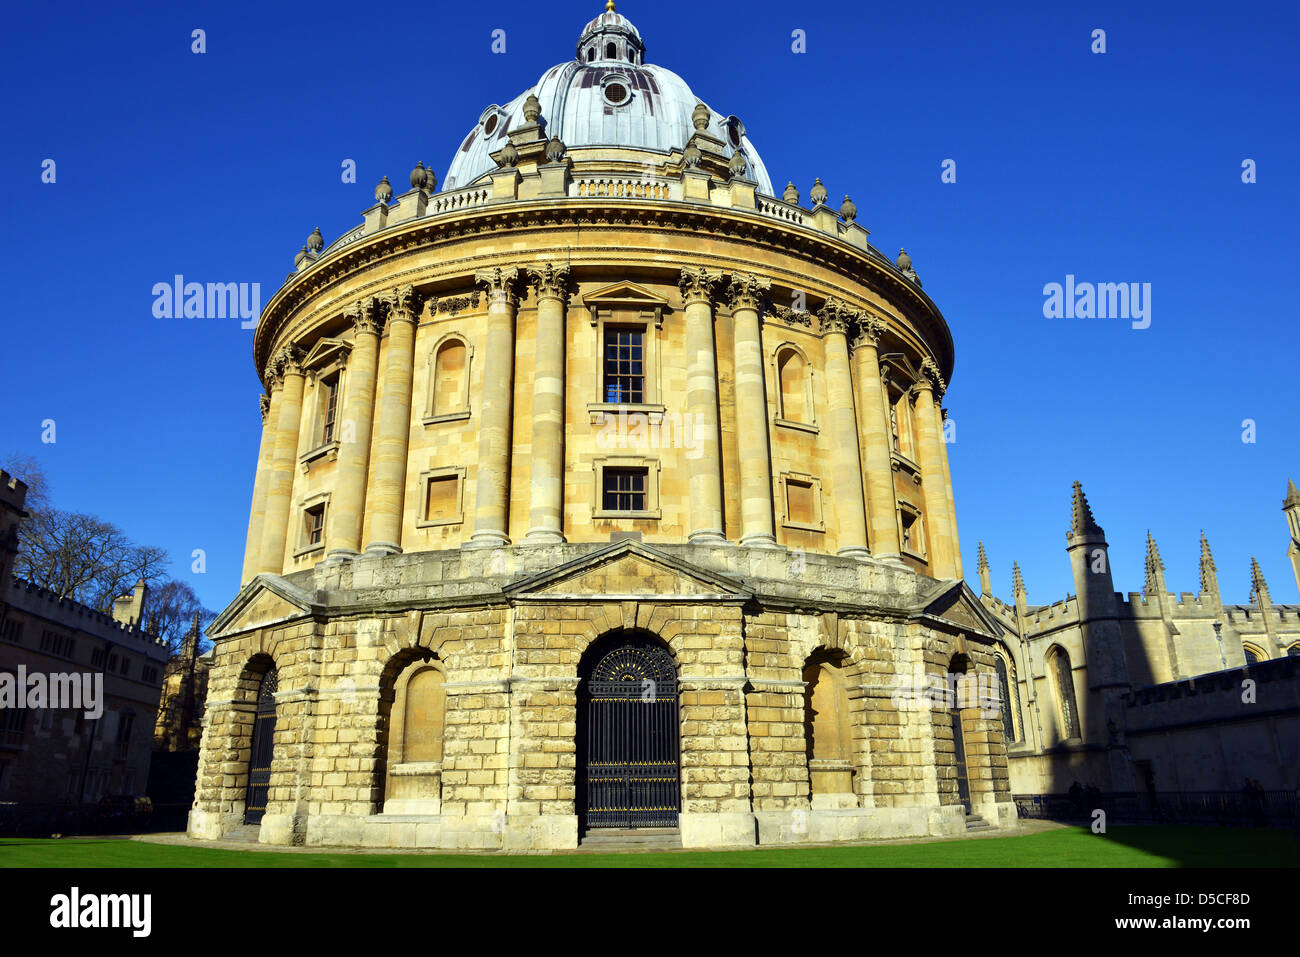 Radcliffe Camera, Radcliffe, Bibliothèque, salle de lecture de la science qui fait partie de la Bodleian Library, University of Oxford, Angleterre Banque D'Images